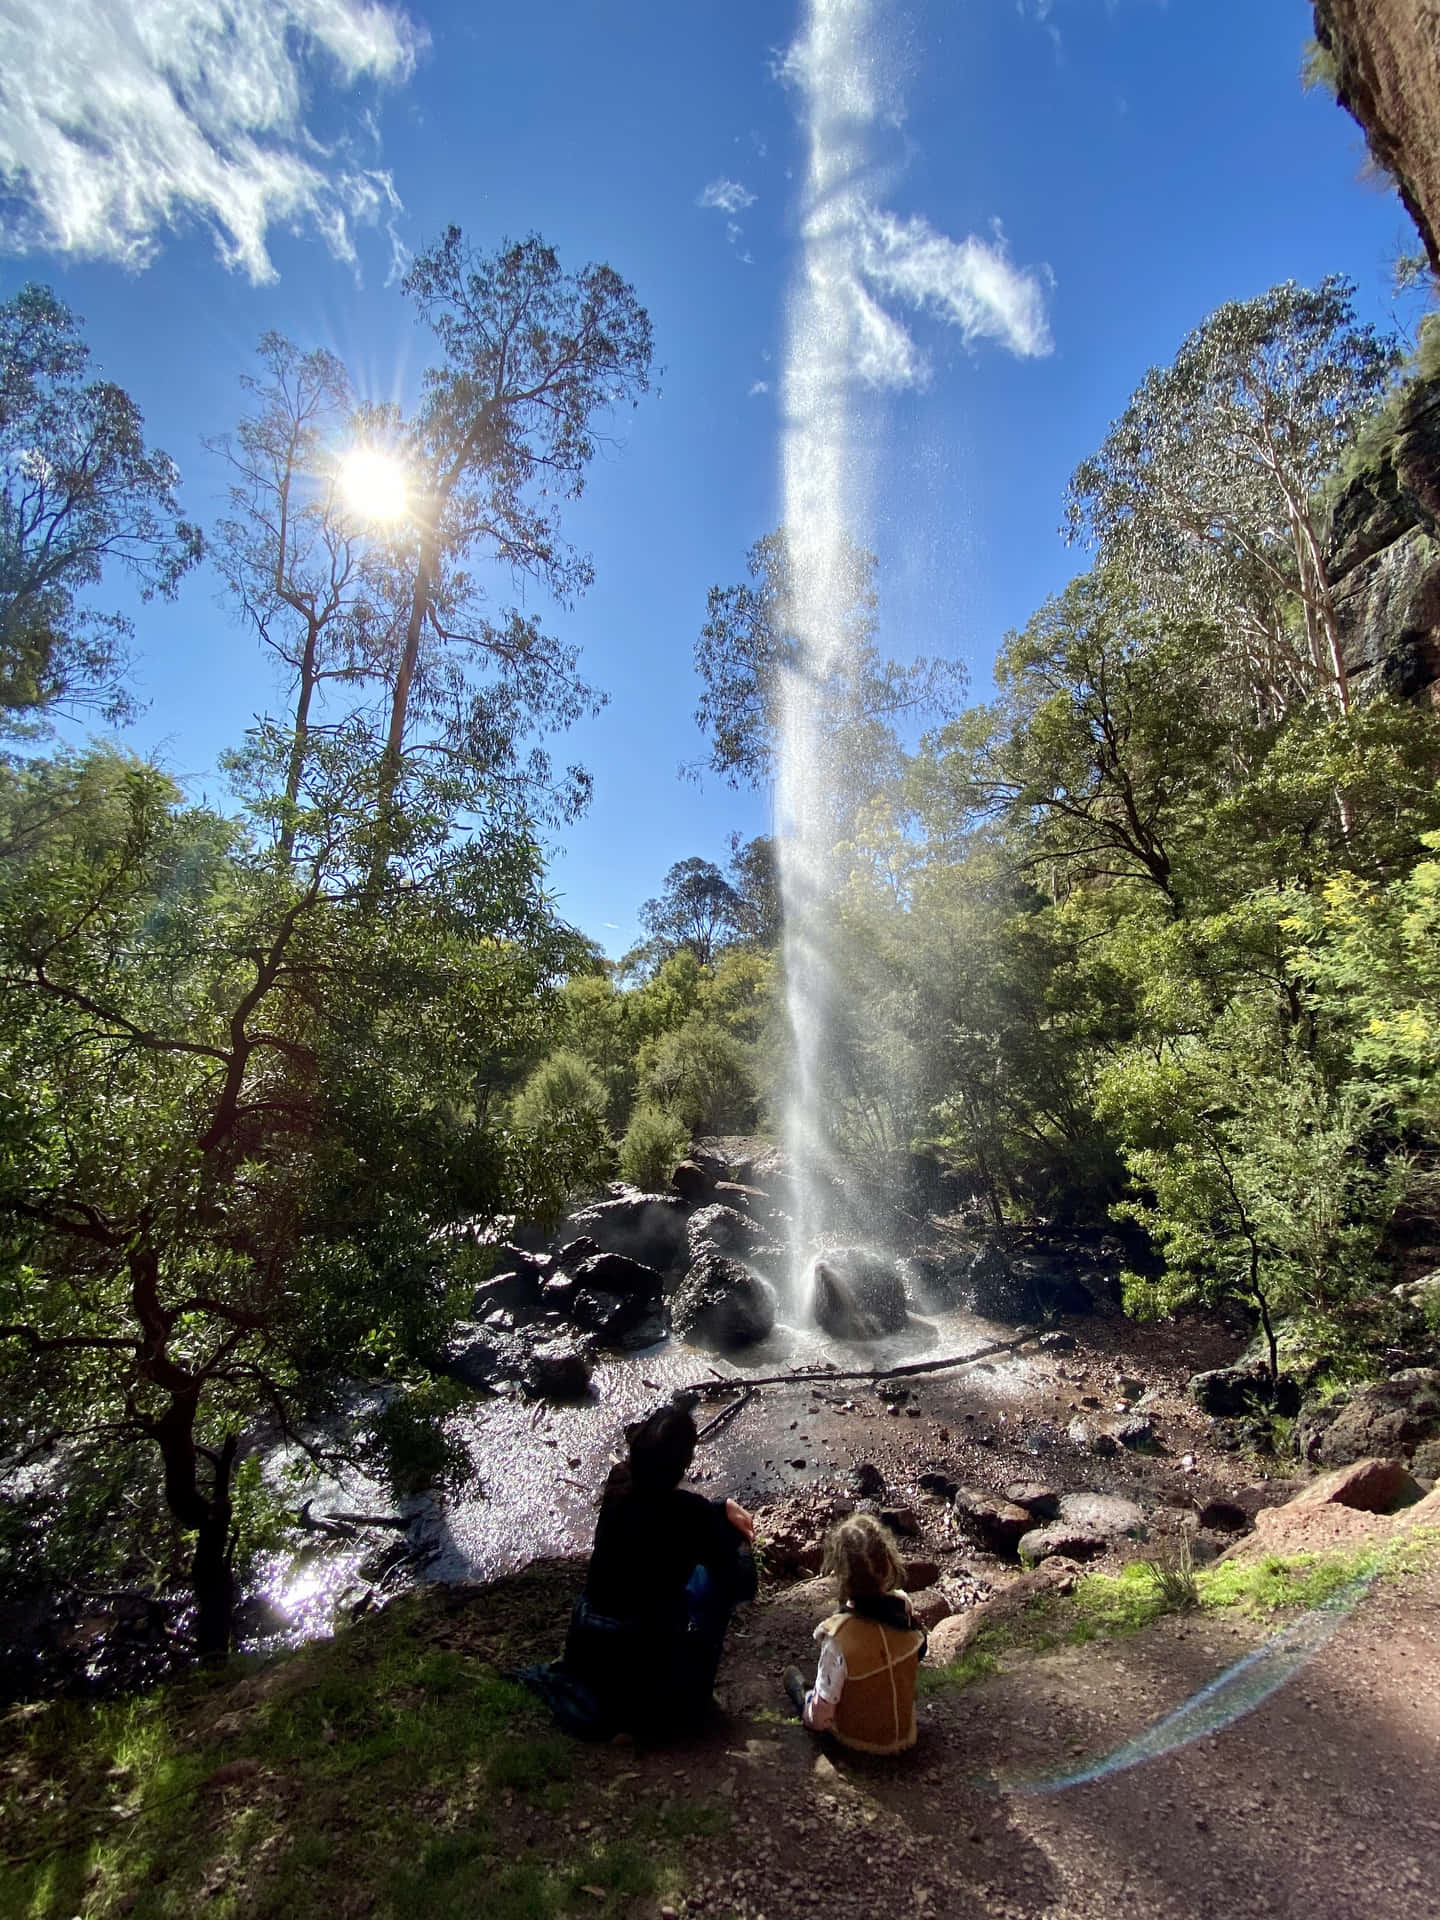 Cooleserfrischendes Bild Vom Wasserfallparadies